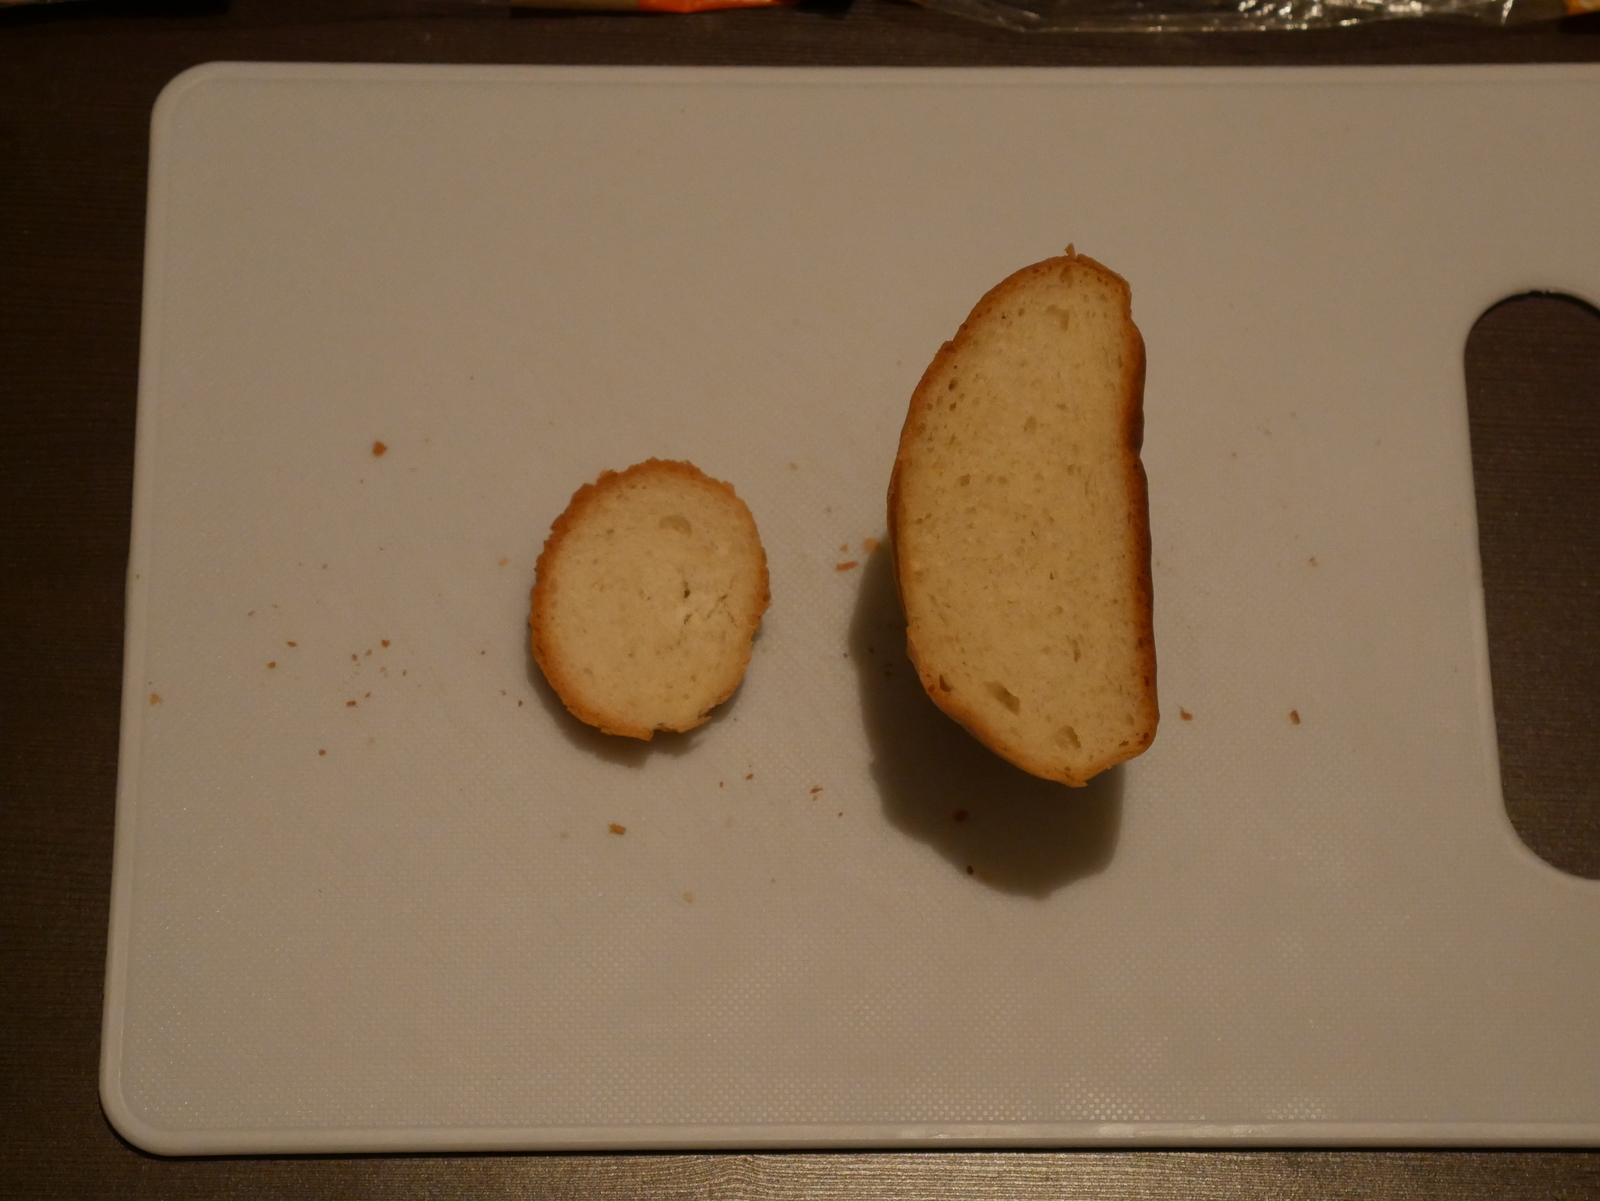 Middle bread, size matters - My, Bread, Baton, , , Longpost